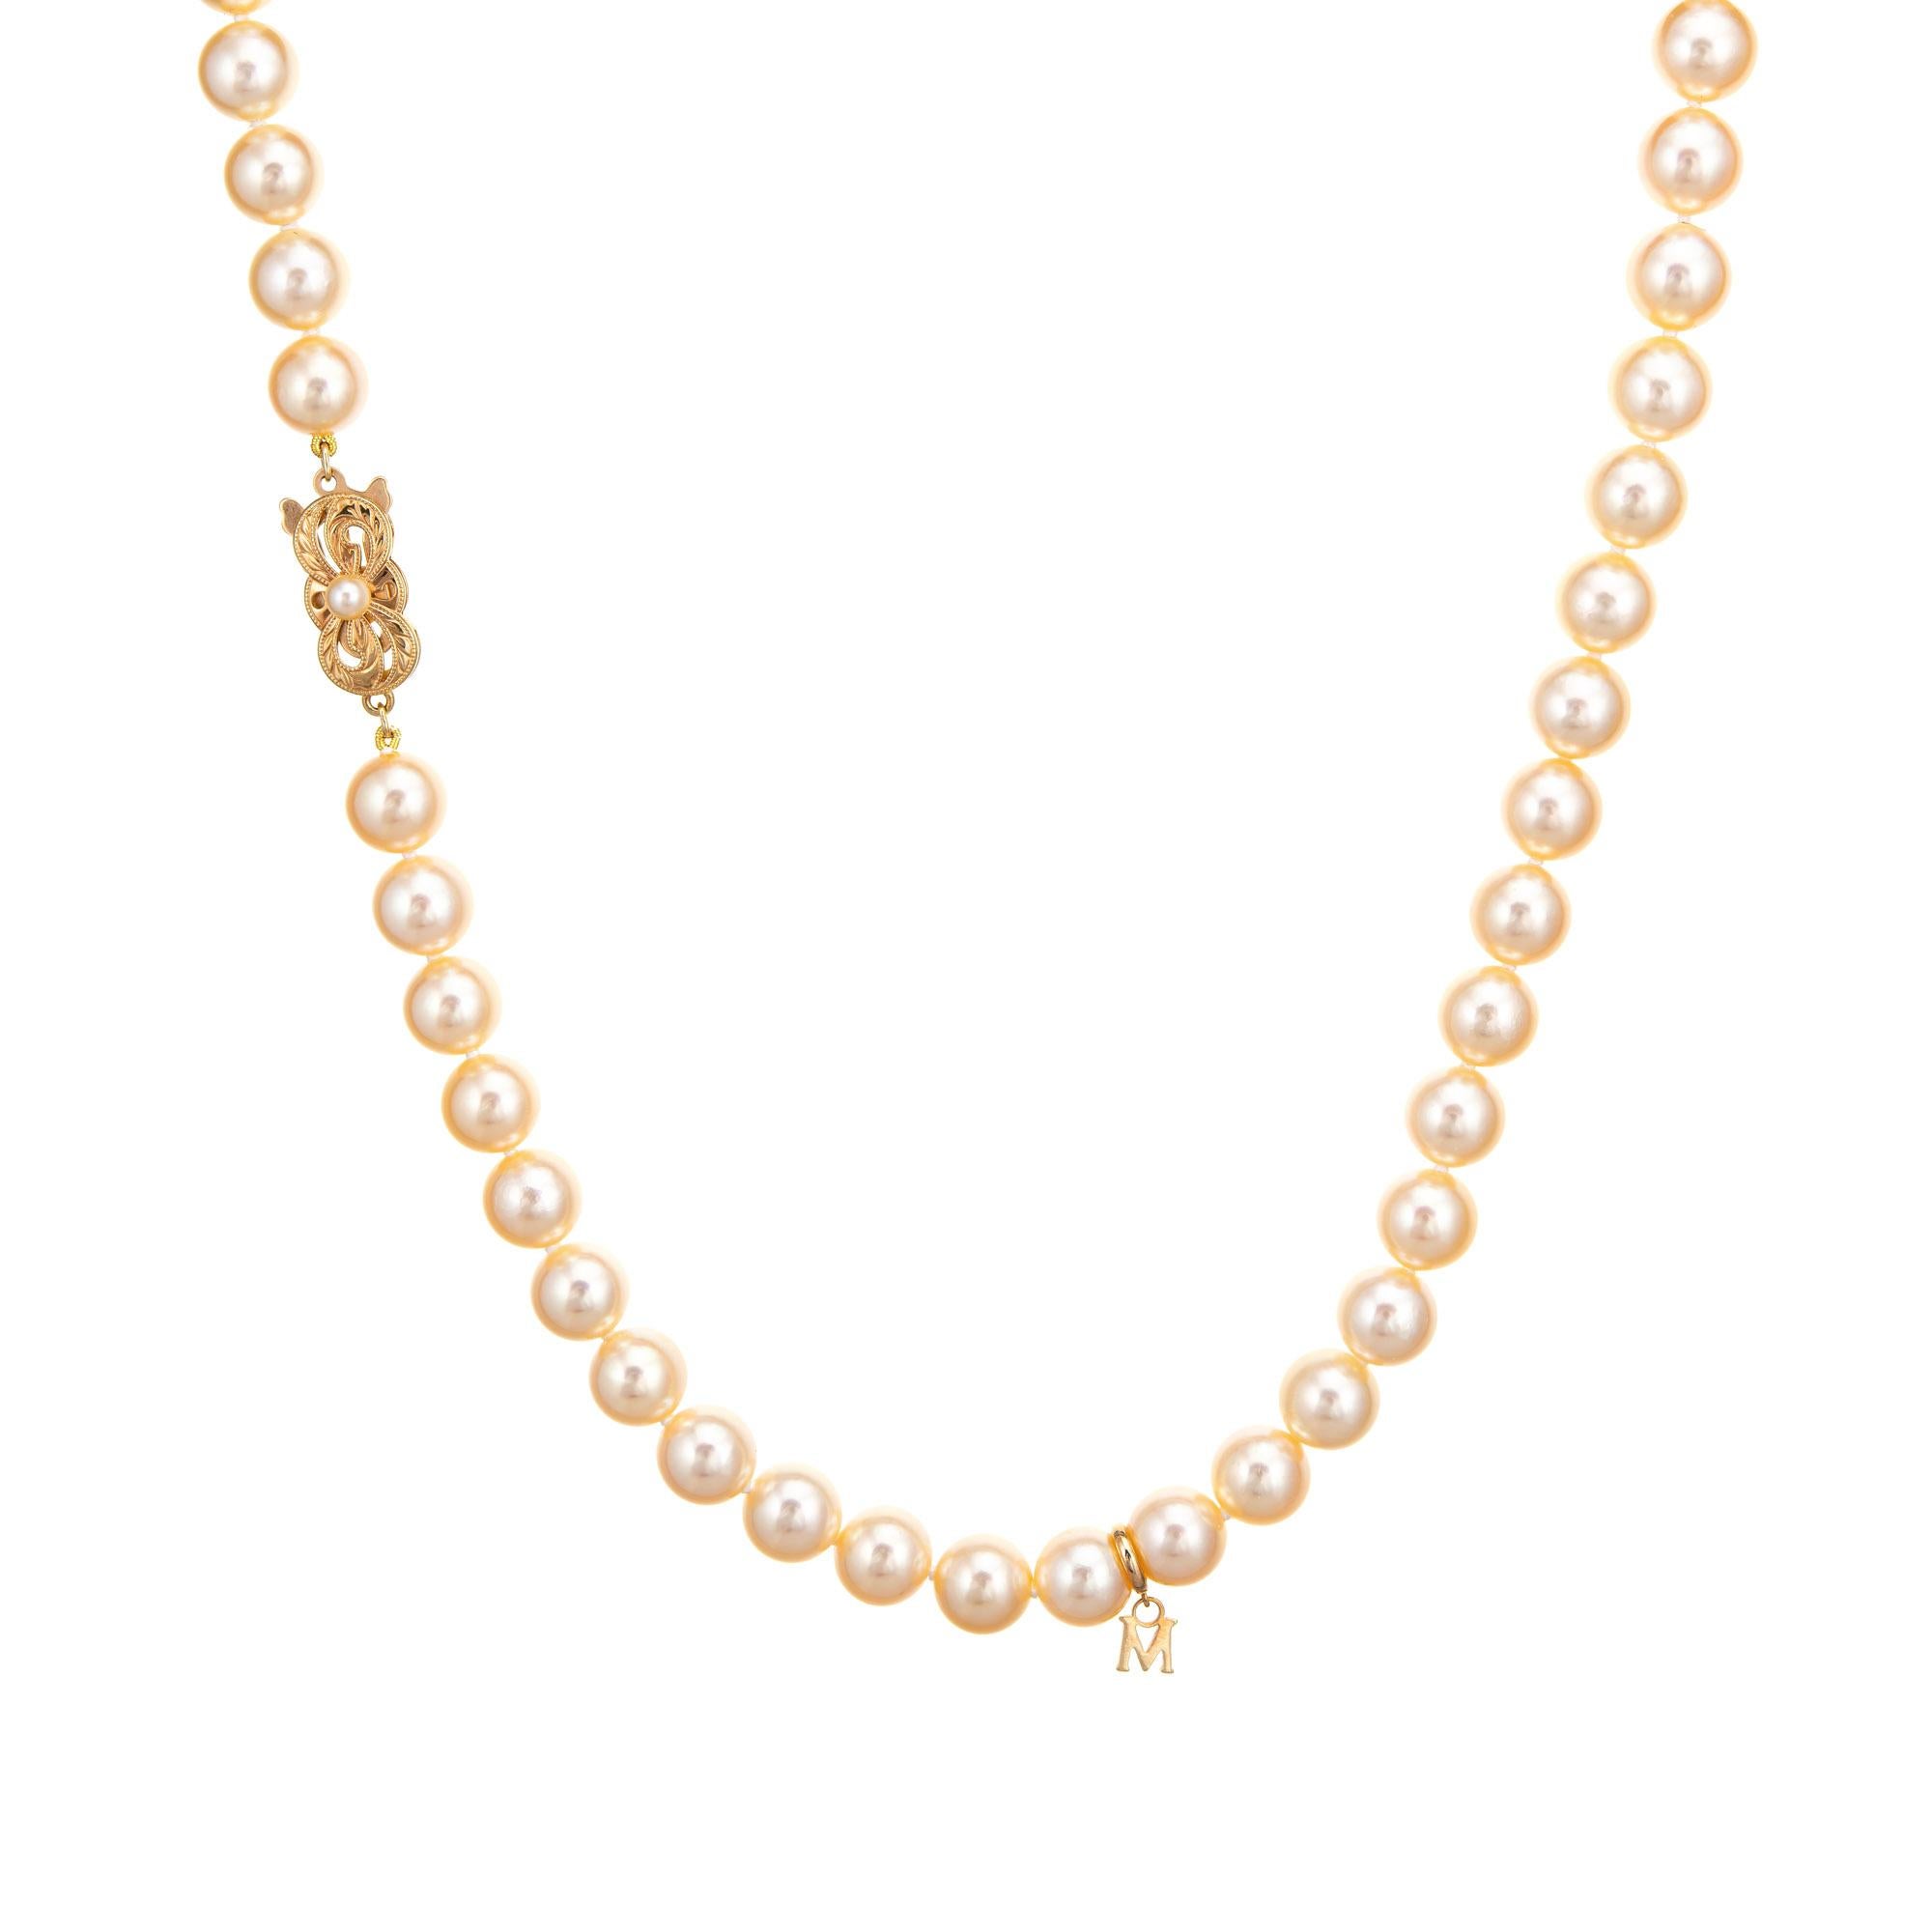 Élégant collier de perles de culture Akoya de Mikimoto terminé par un fermoir en or jaune 18 carats (circa 2003). 

Les perles de culture Akoya de 8 mm sont nouées individuellement. Les perles sont lustrées et présentent une teinte champagne doré